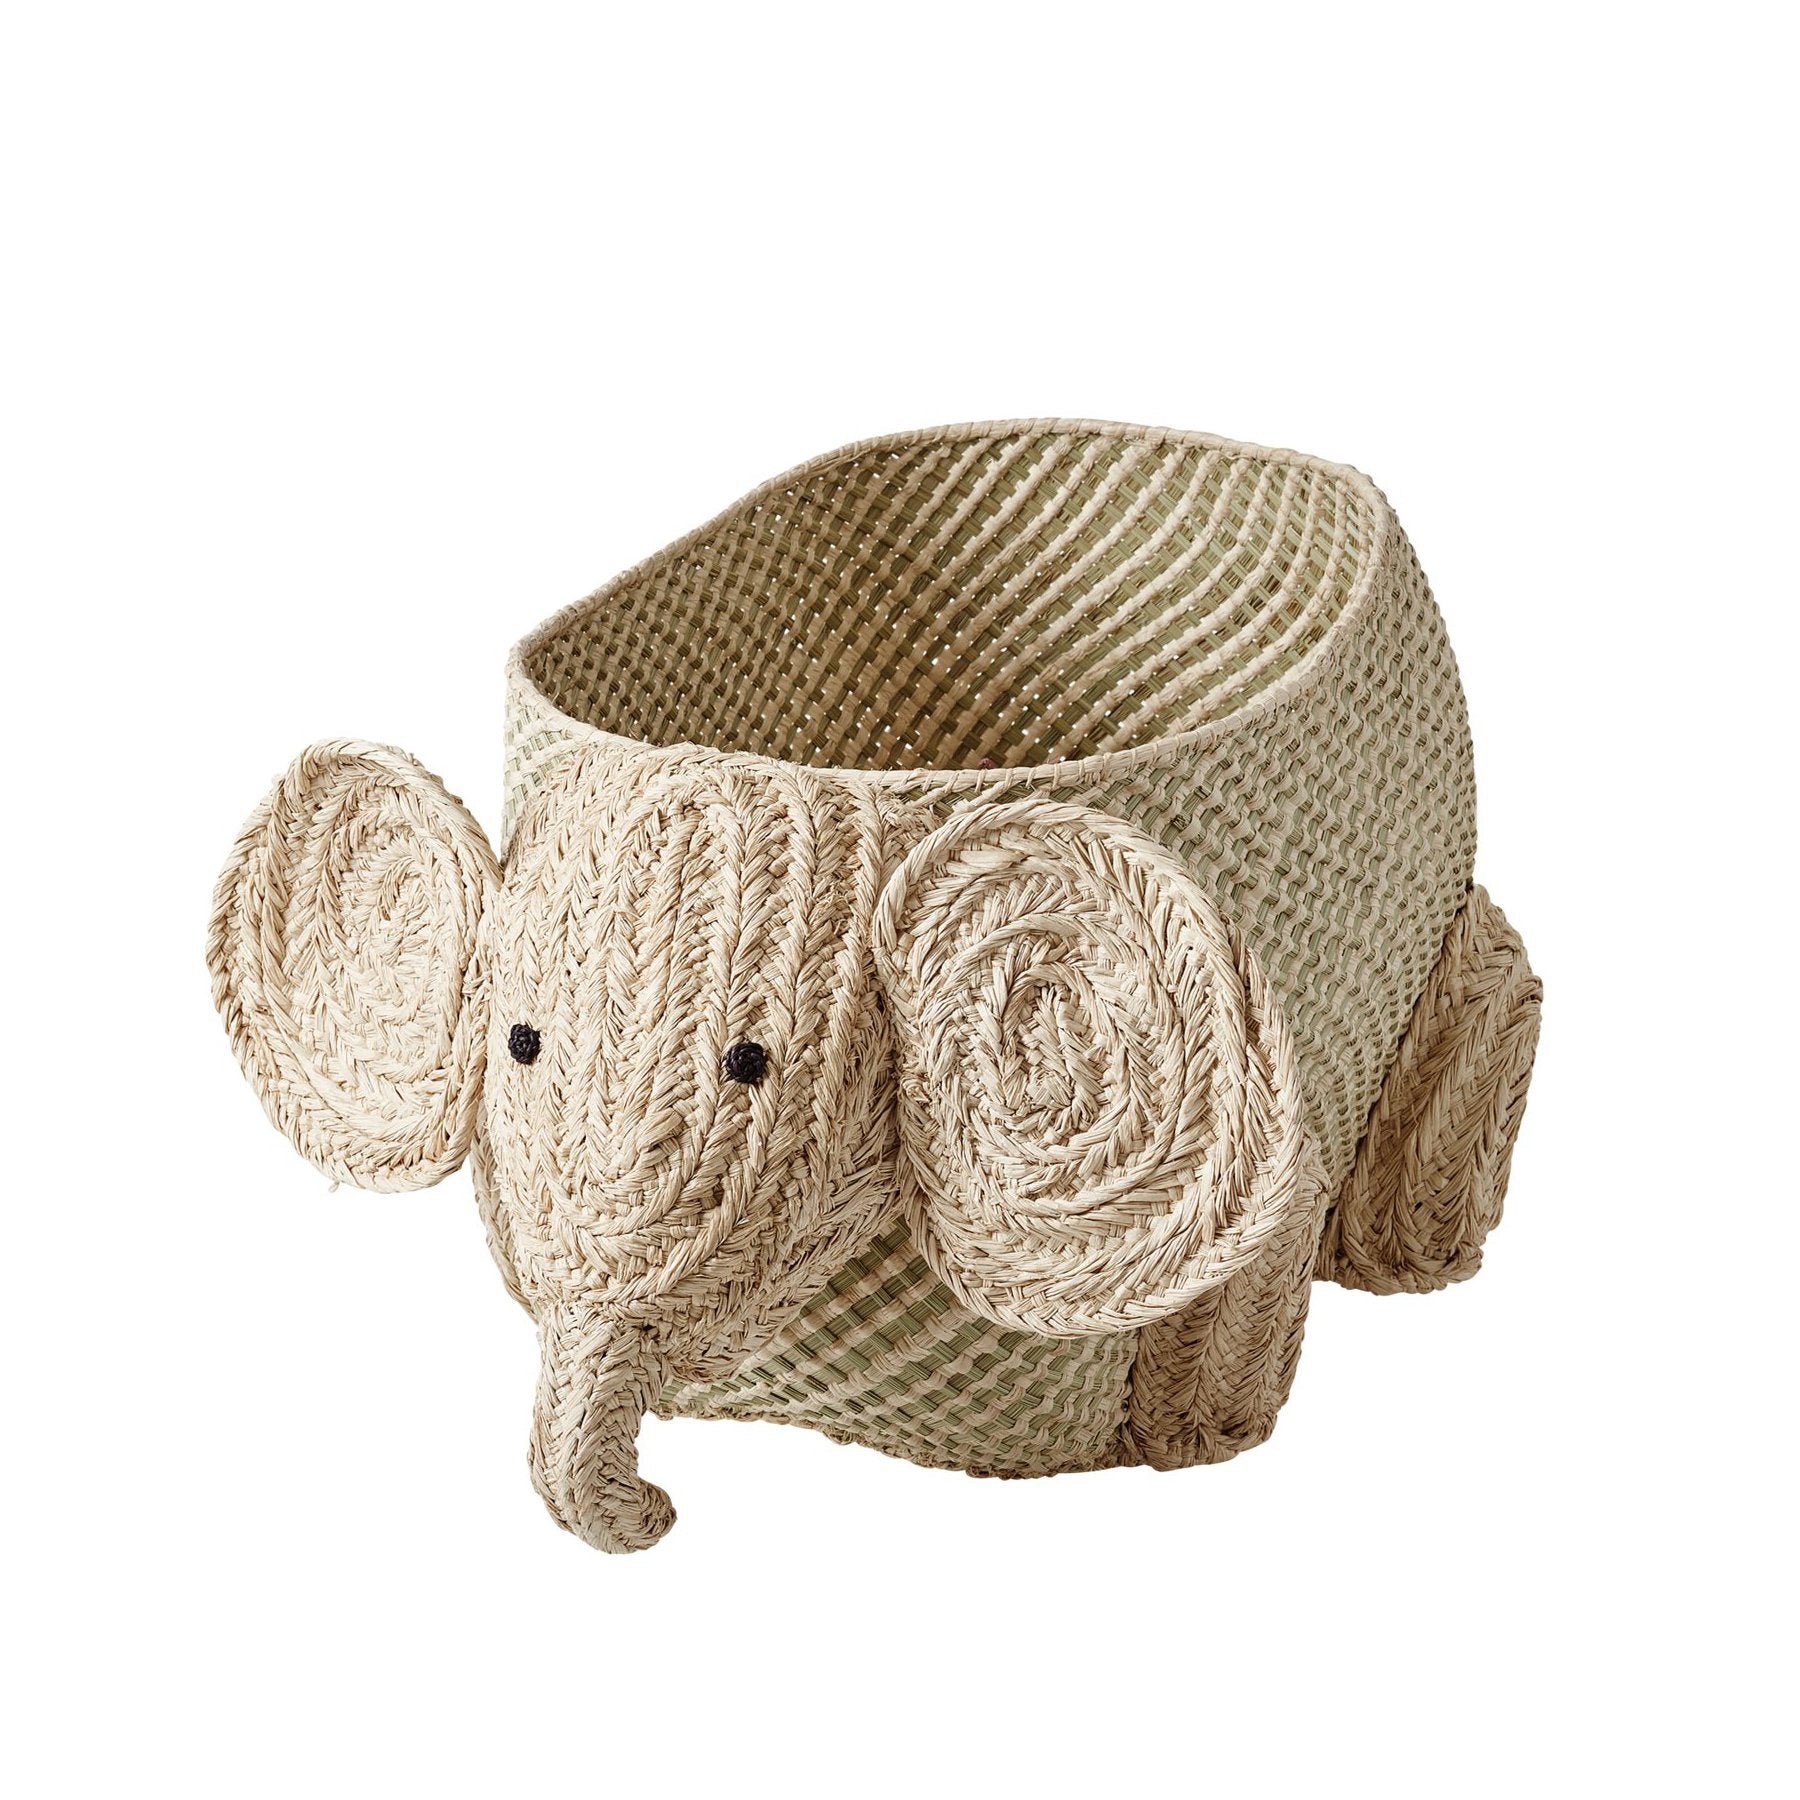 elephant toy basket